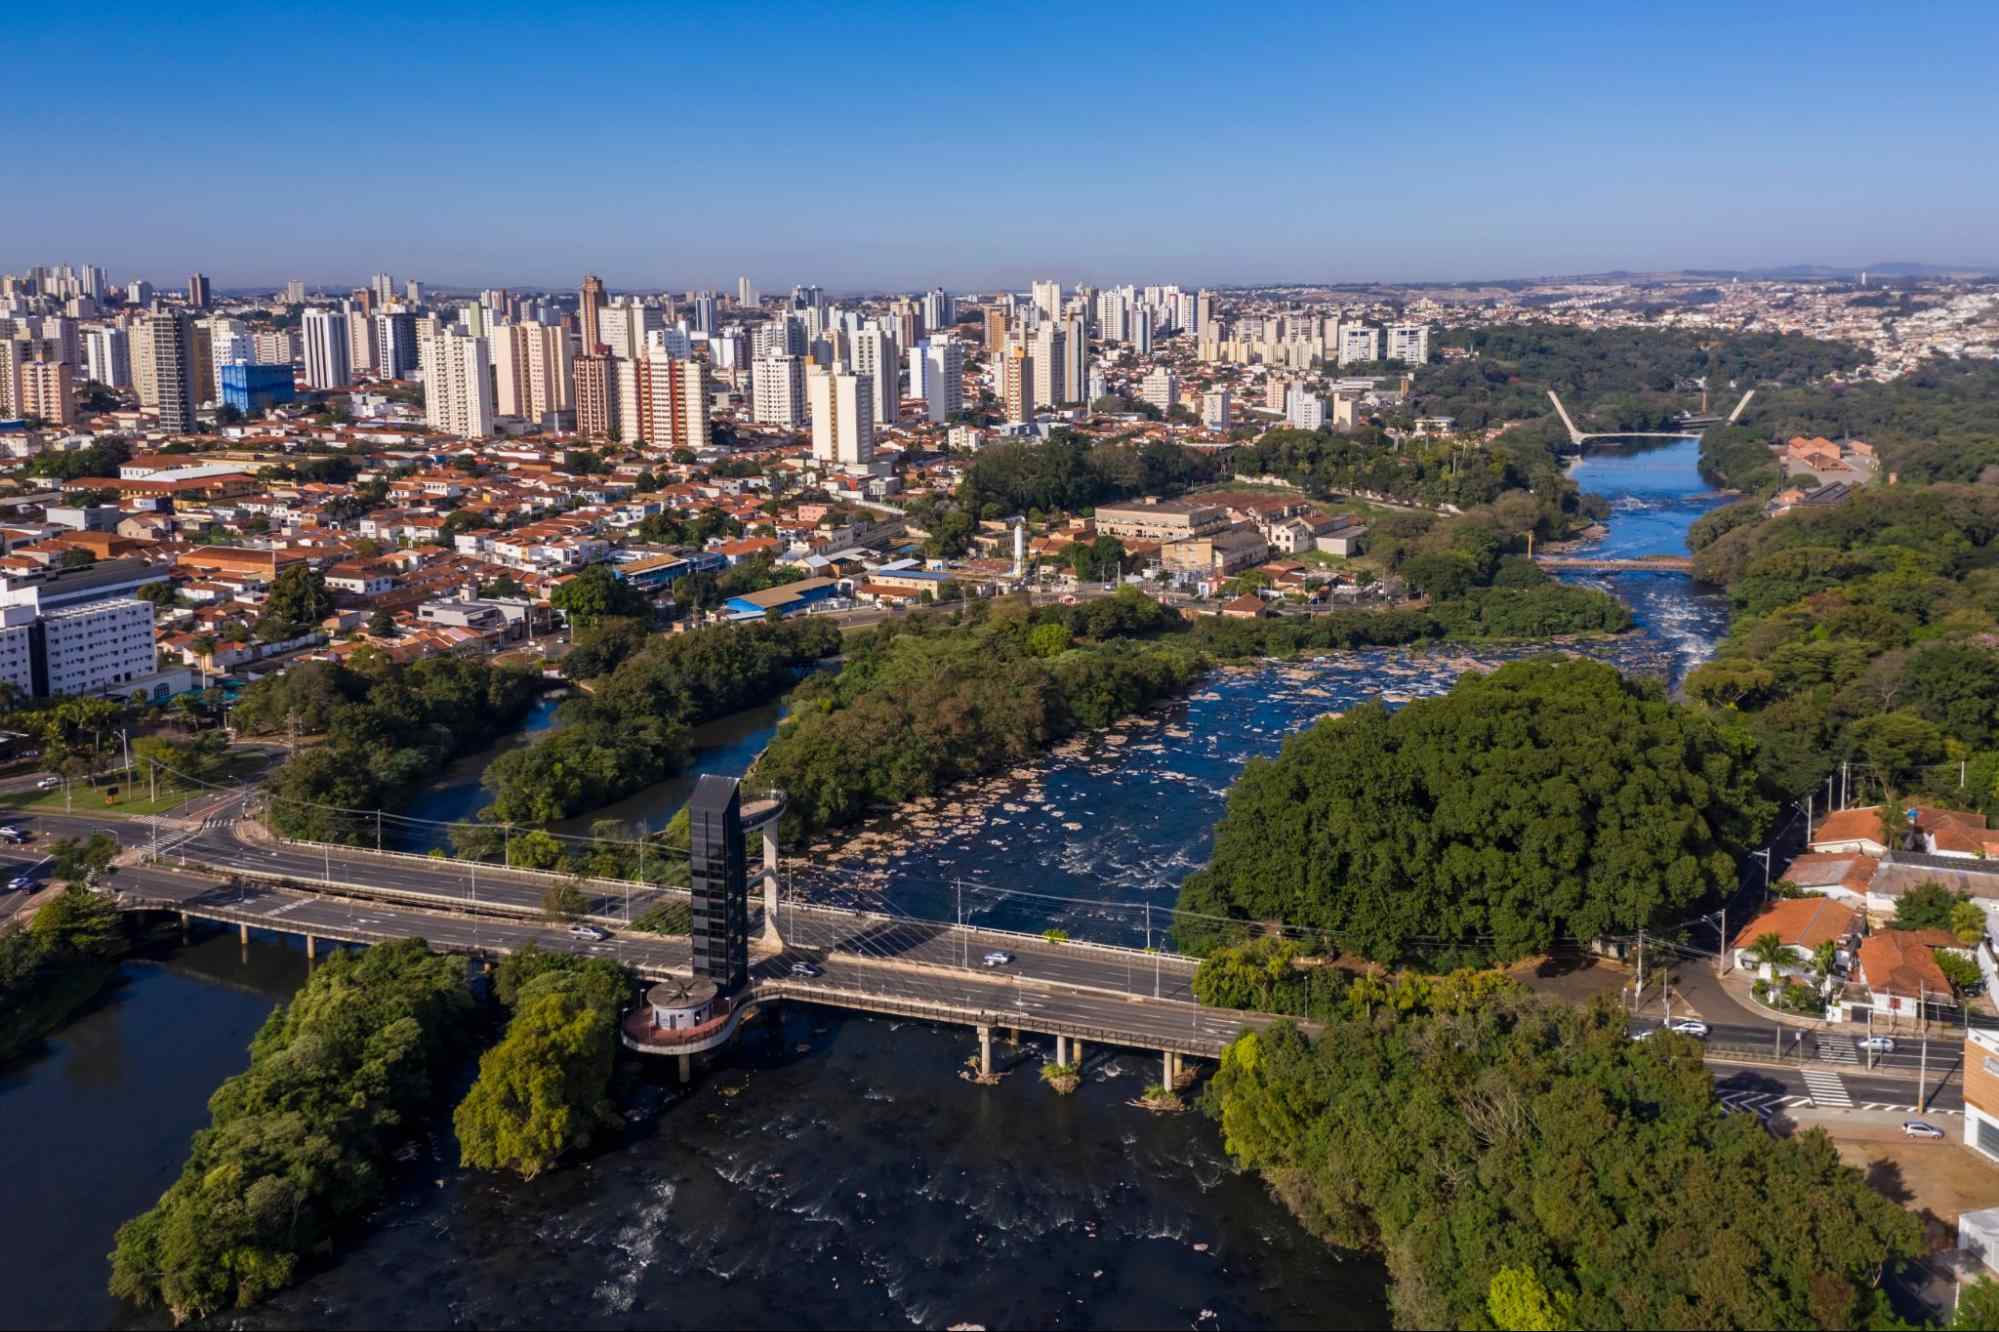 Vista aérea de Piracicaba, SP. A cidade é cortada por áreas densamente arborizadas e pelas águas do Rio Piracicaba. A paisagem urbana é composta tanto por construções baixas quanto por prédios altos e modernos